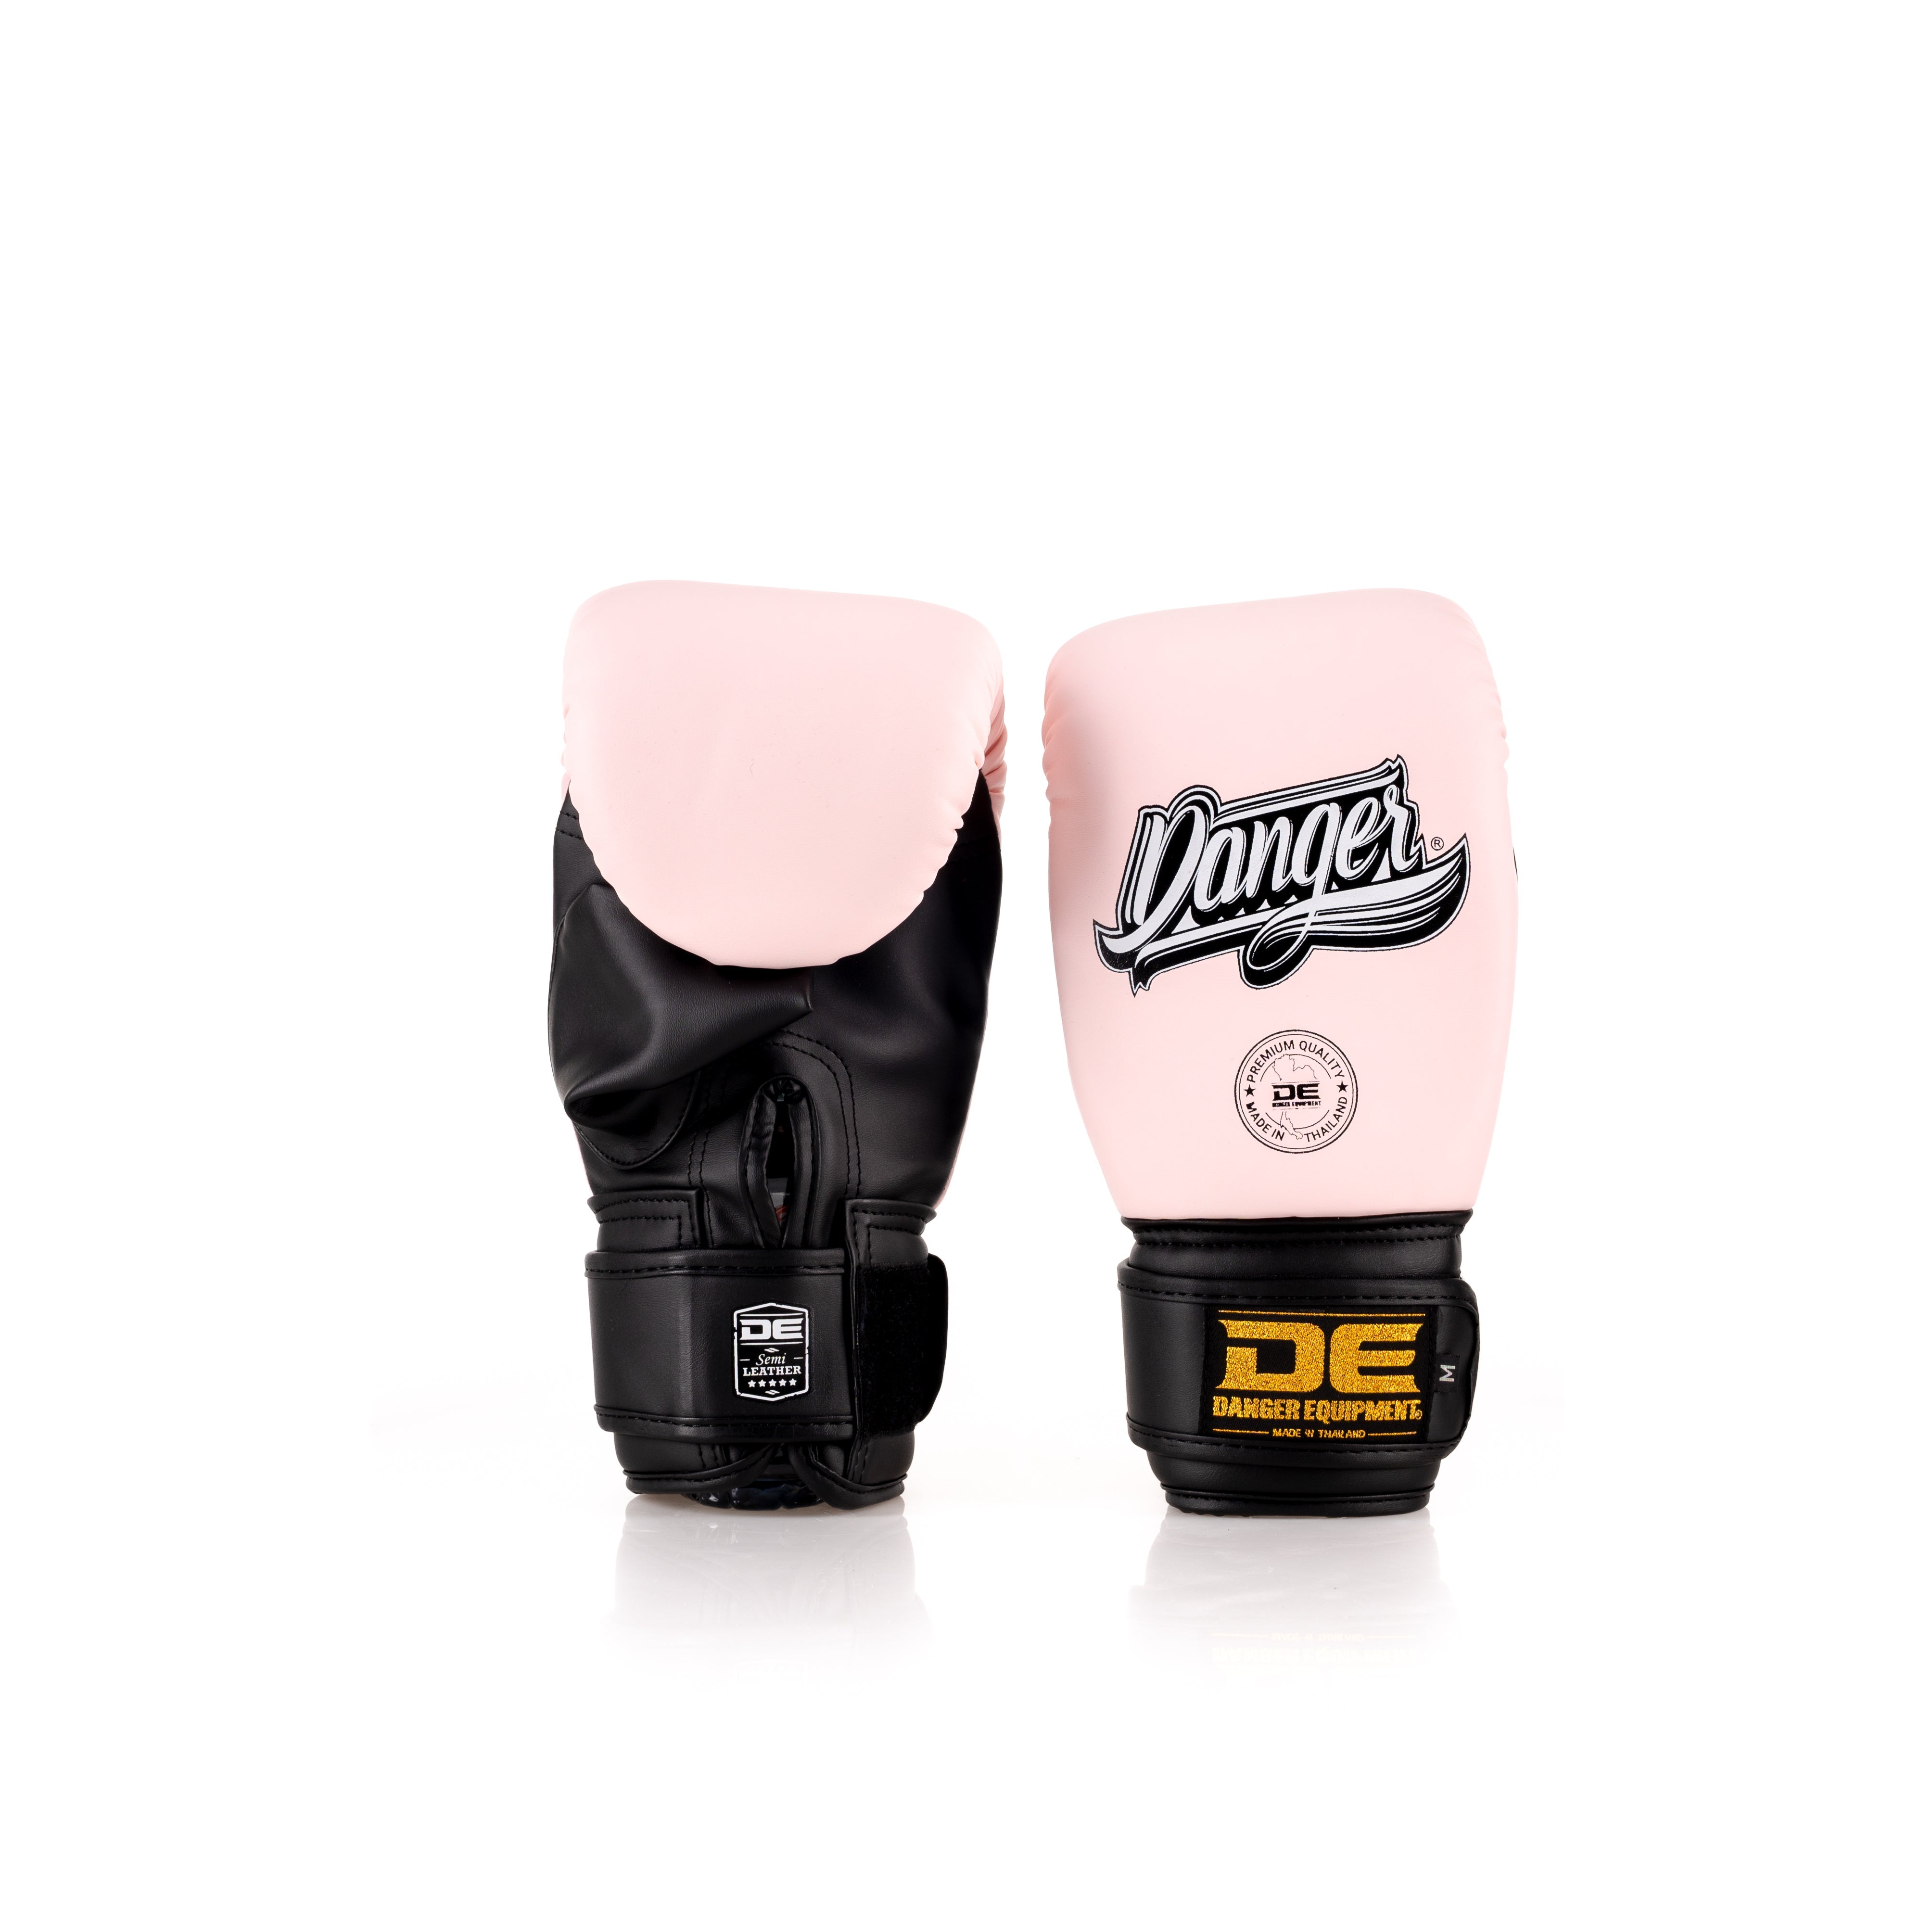 Black/Pink Danger Equipment Bag Gloves  Back/Front